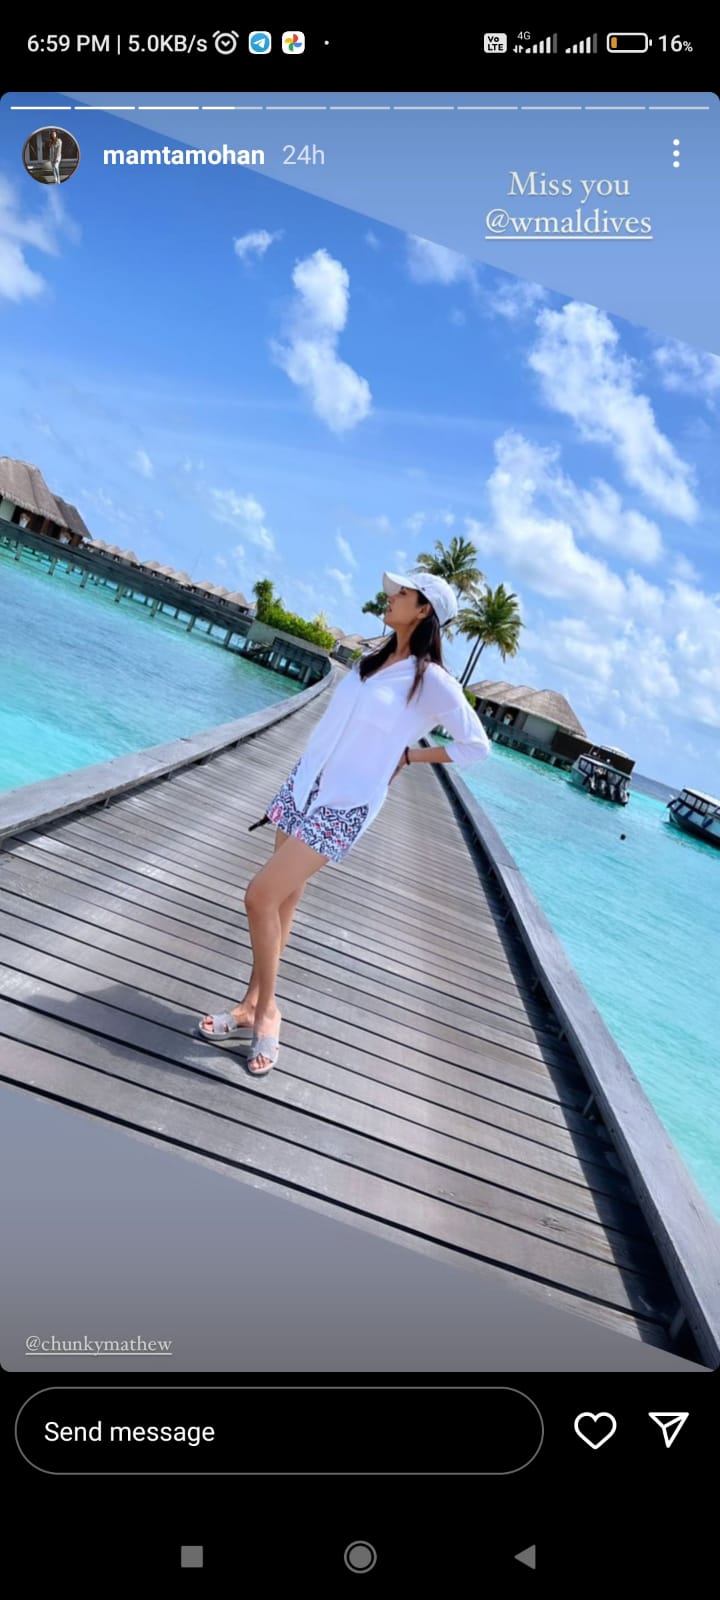 Mamtha mohandaas Maldives Vacation throwback Photos